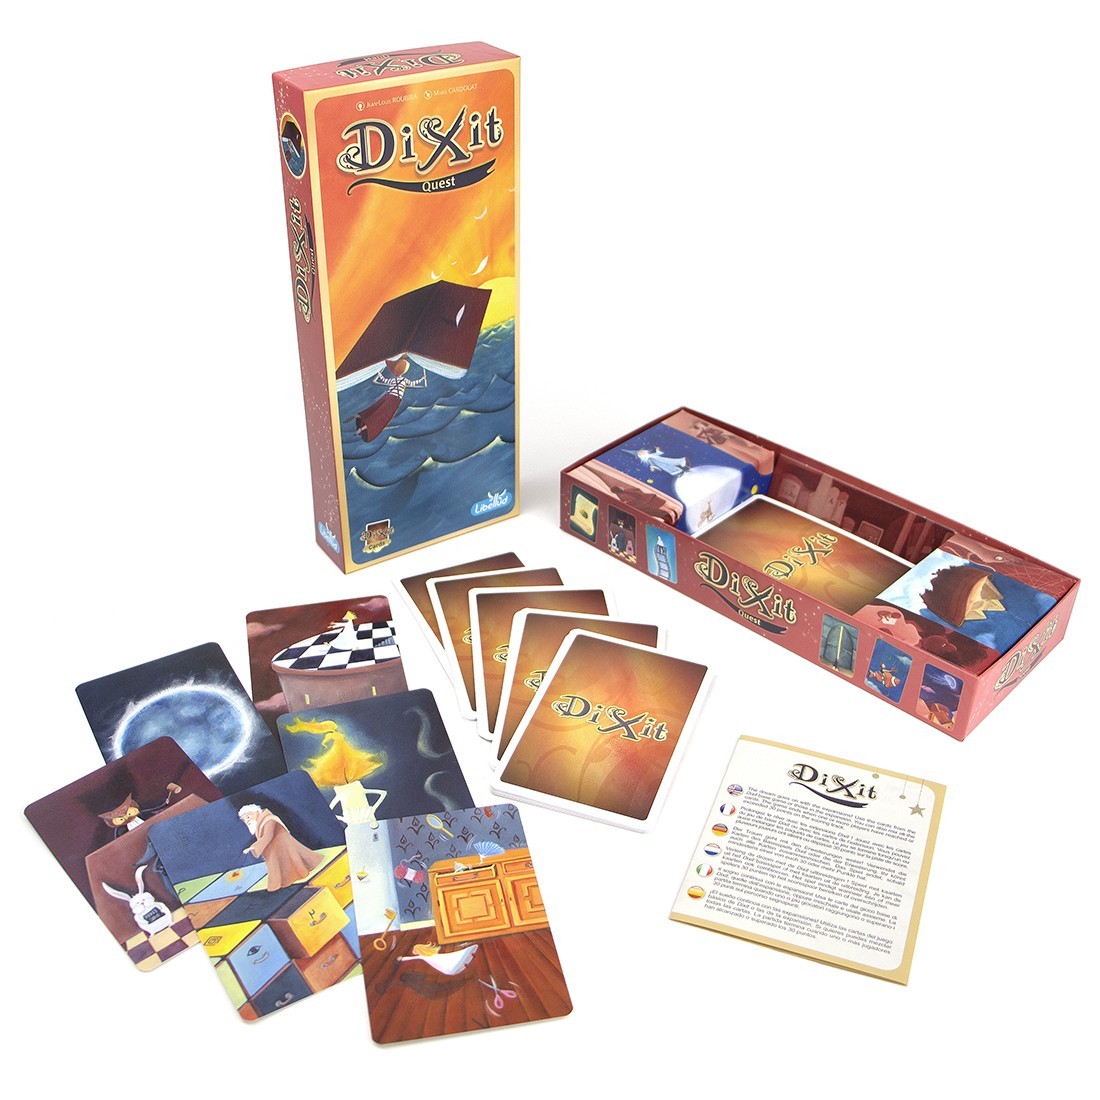 Настільна гра Діксіт 2: Пригода (Dixit 2: Quest), бренду Ігромаг, для 3-8 гравців, час гри < 30хв. - 2 - KUBIX 